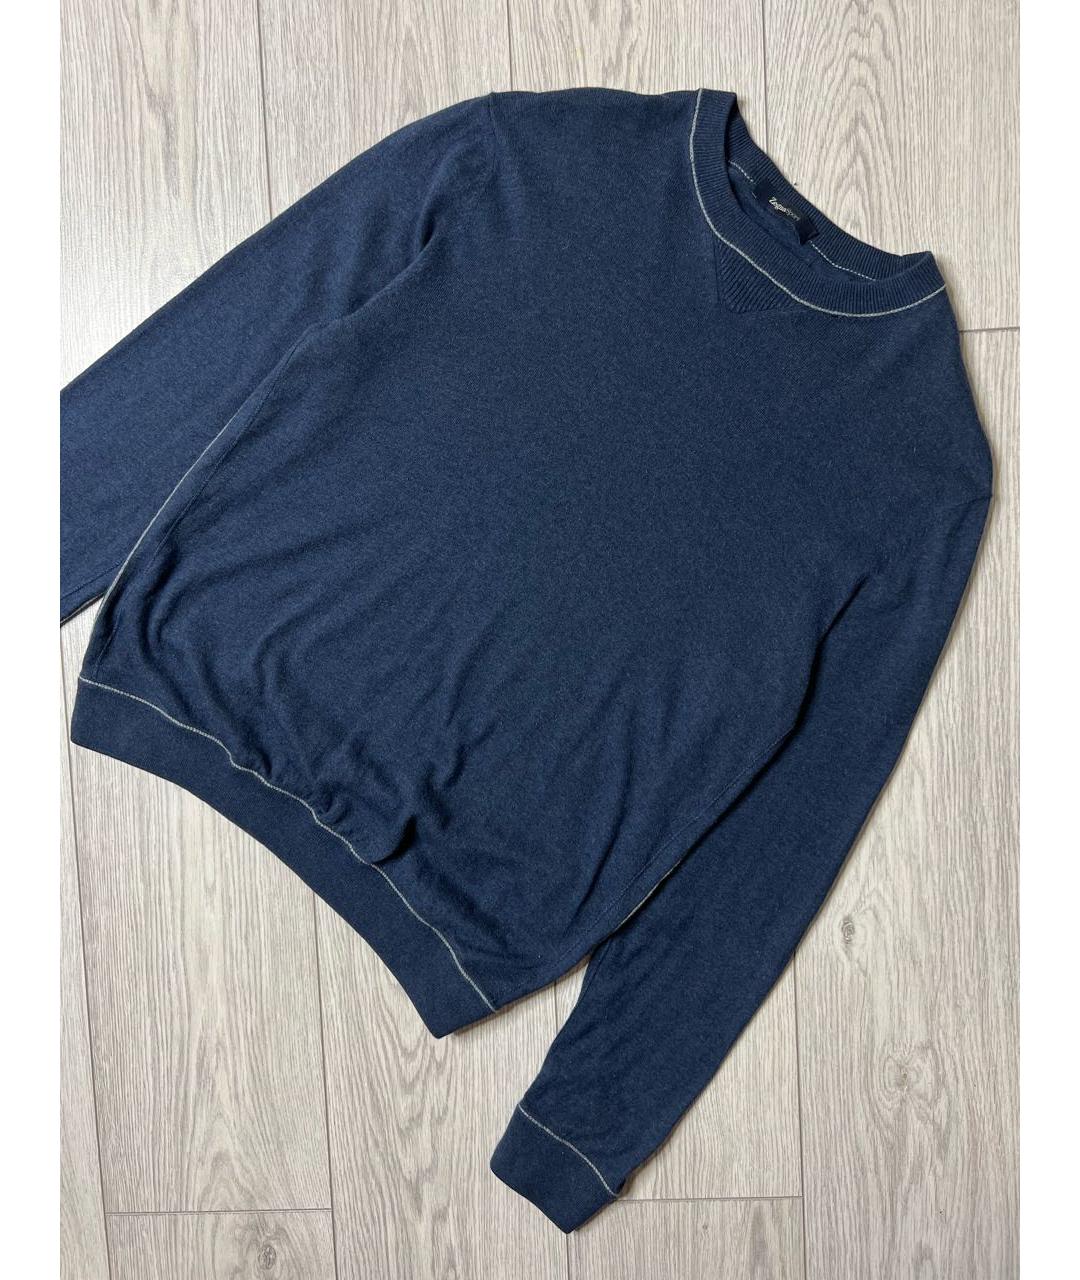 ZEGNA SPORT Темно-синий кашемировый джемпер / свитер, фото 2